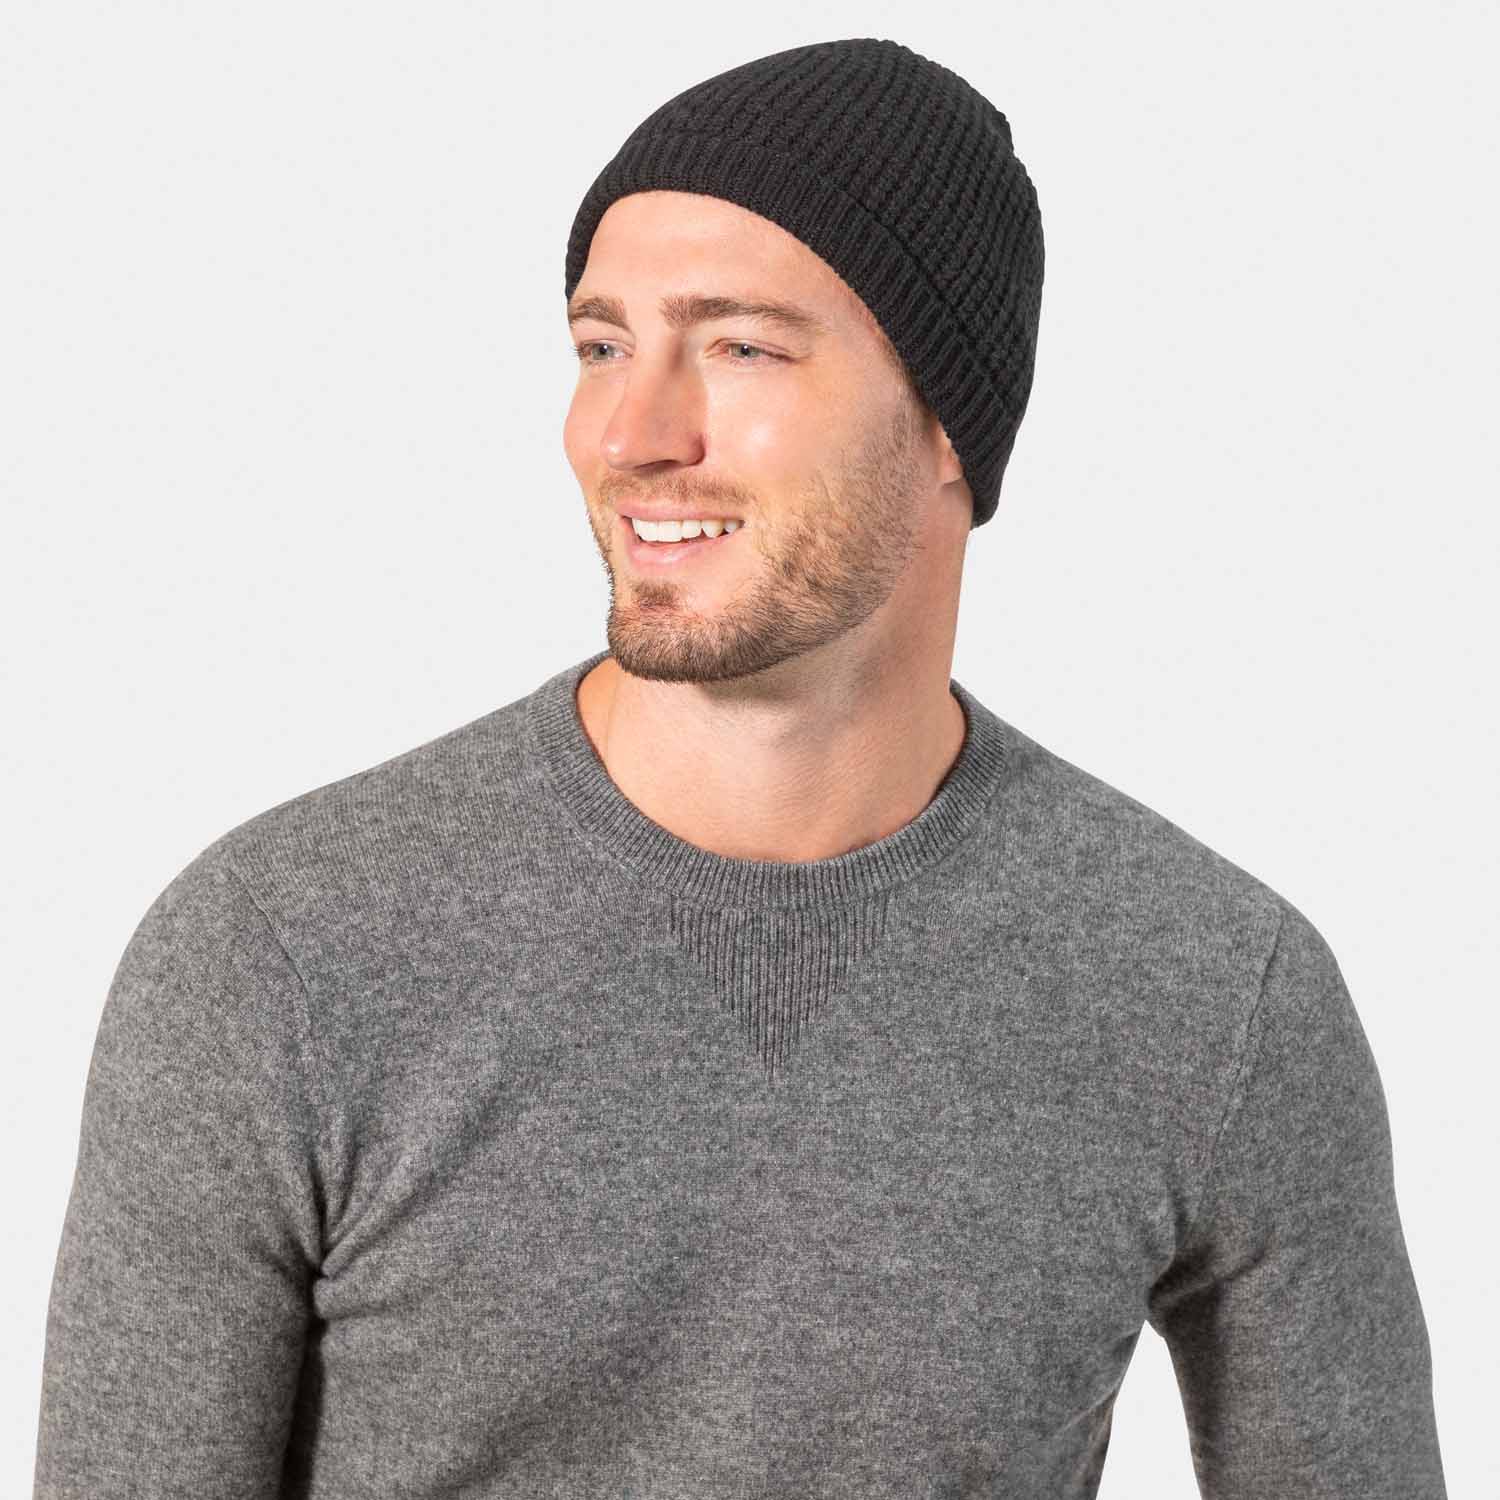 100% Cashmere Beanie Hat, Scarf & Gloves Set Unisex Dark Grey | Frugess  Cashmere